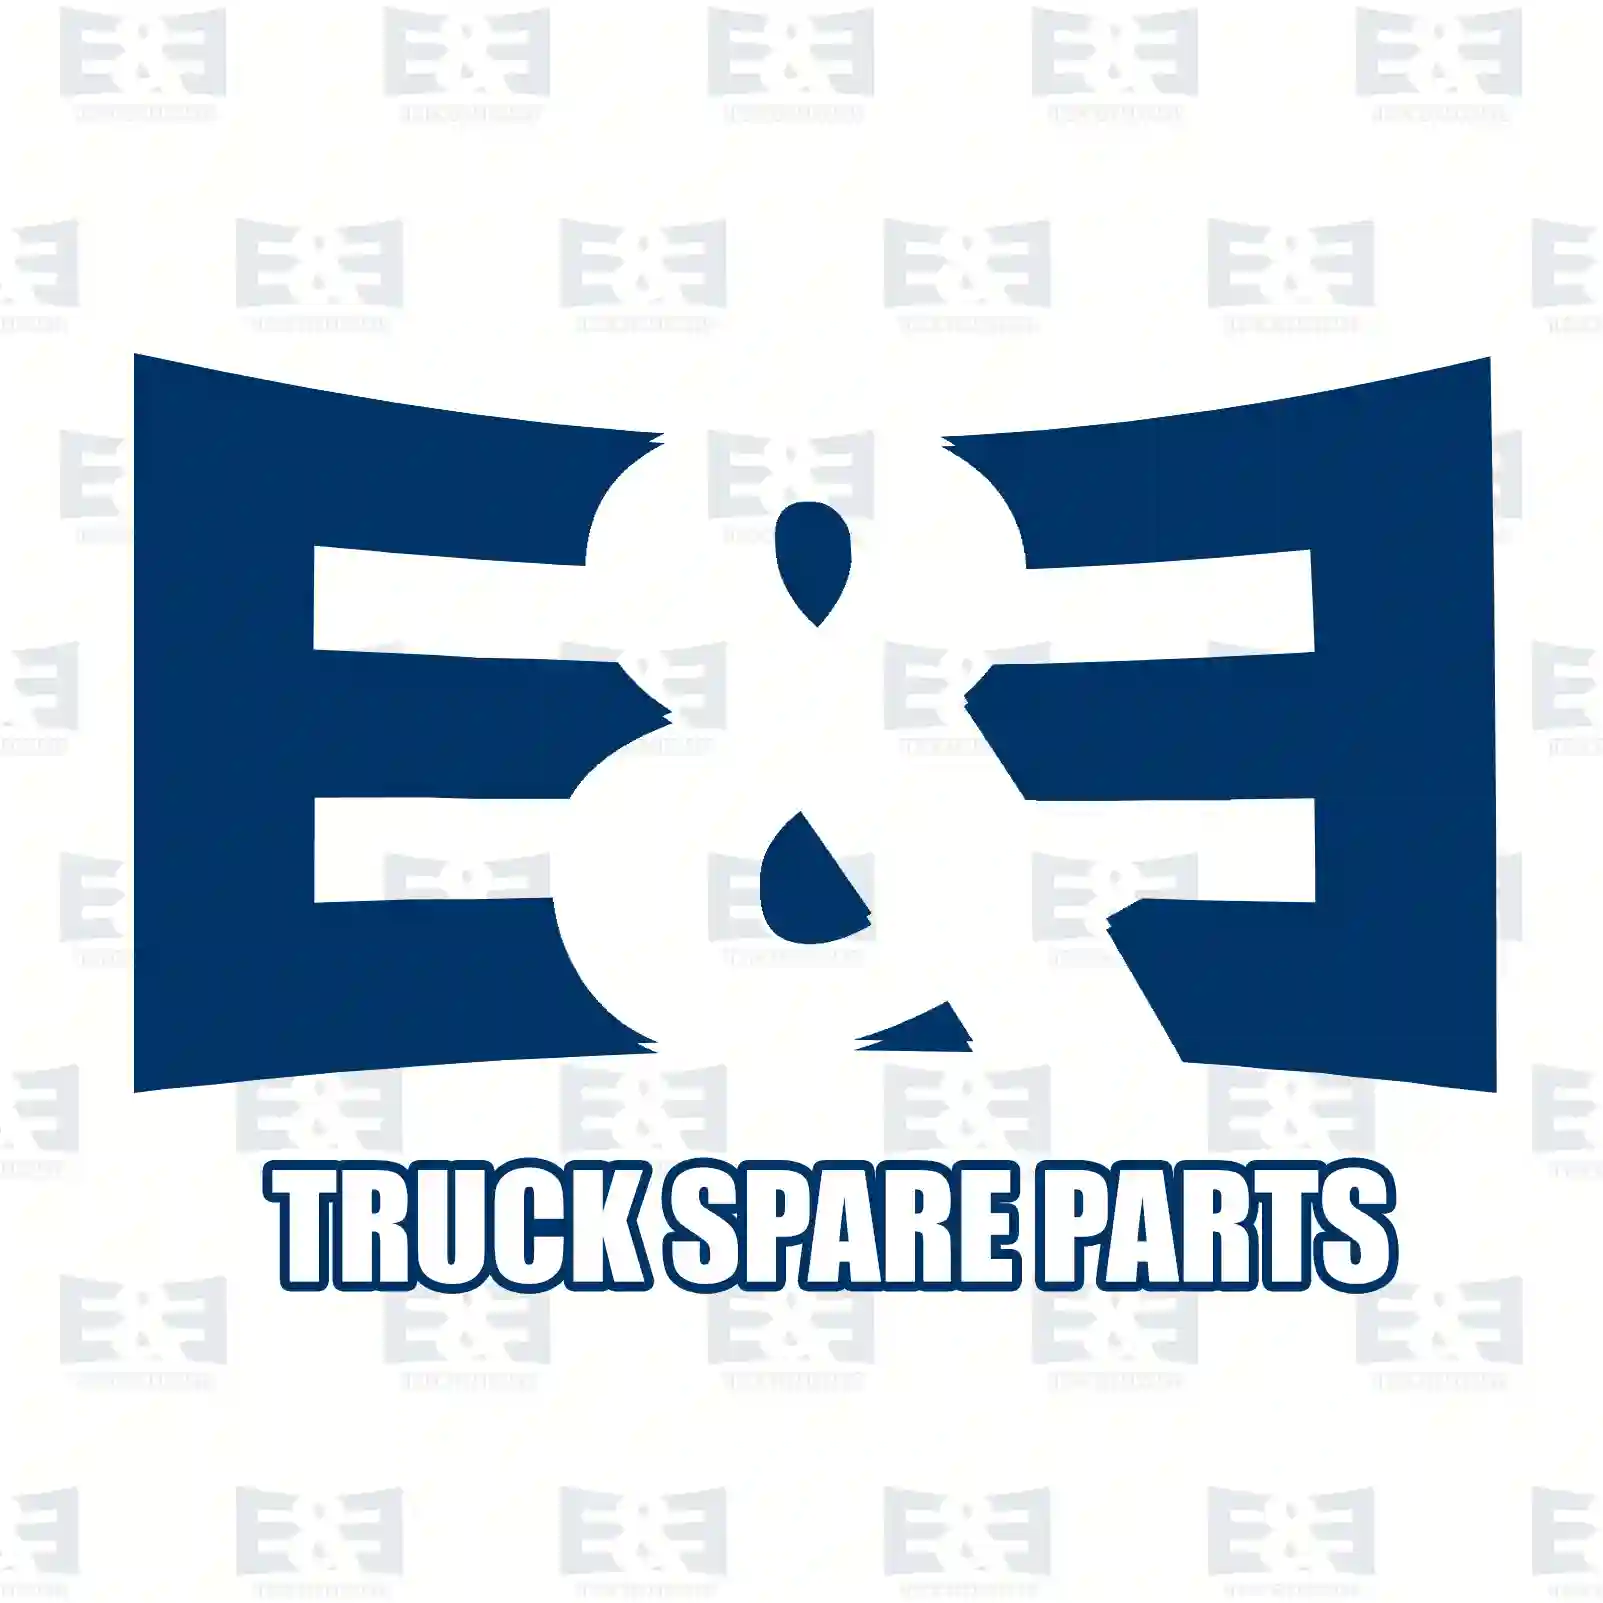 Quick release valve, 2E2294144, 0867880, 867880, 5021170426, 1802088 ||  2E2294144 E&E Truck Spare Parts | Truck Spare Parts, Auotomotive Spare Parts Quick release valve, 2E2294144, 0867880, 867880, 5021170426, 1802088 ||  2E2294144 E&E Truck Spare Parts | Truck Spare Parts, Auotomotive Spare Parts